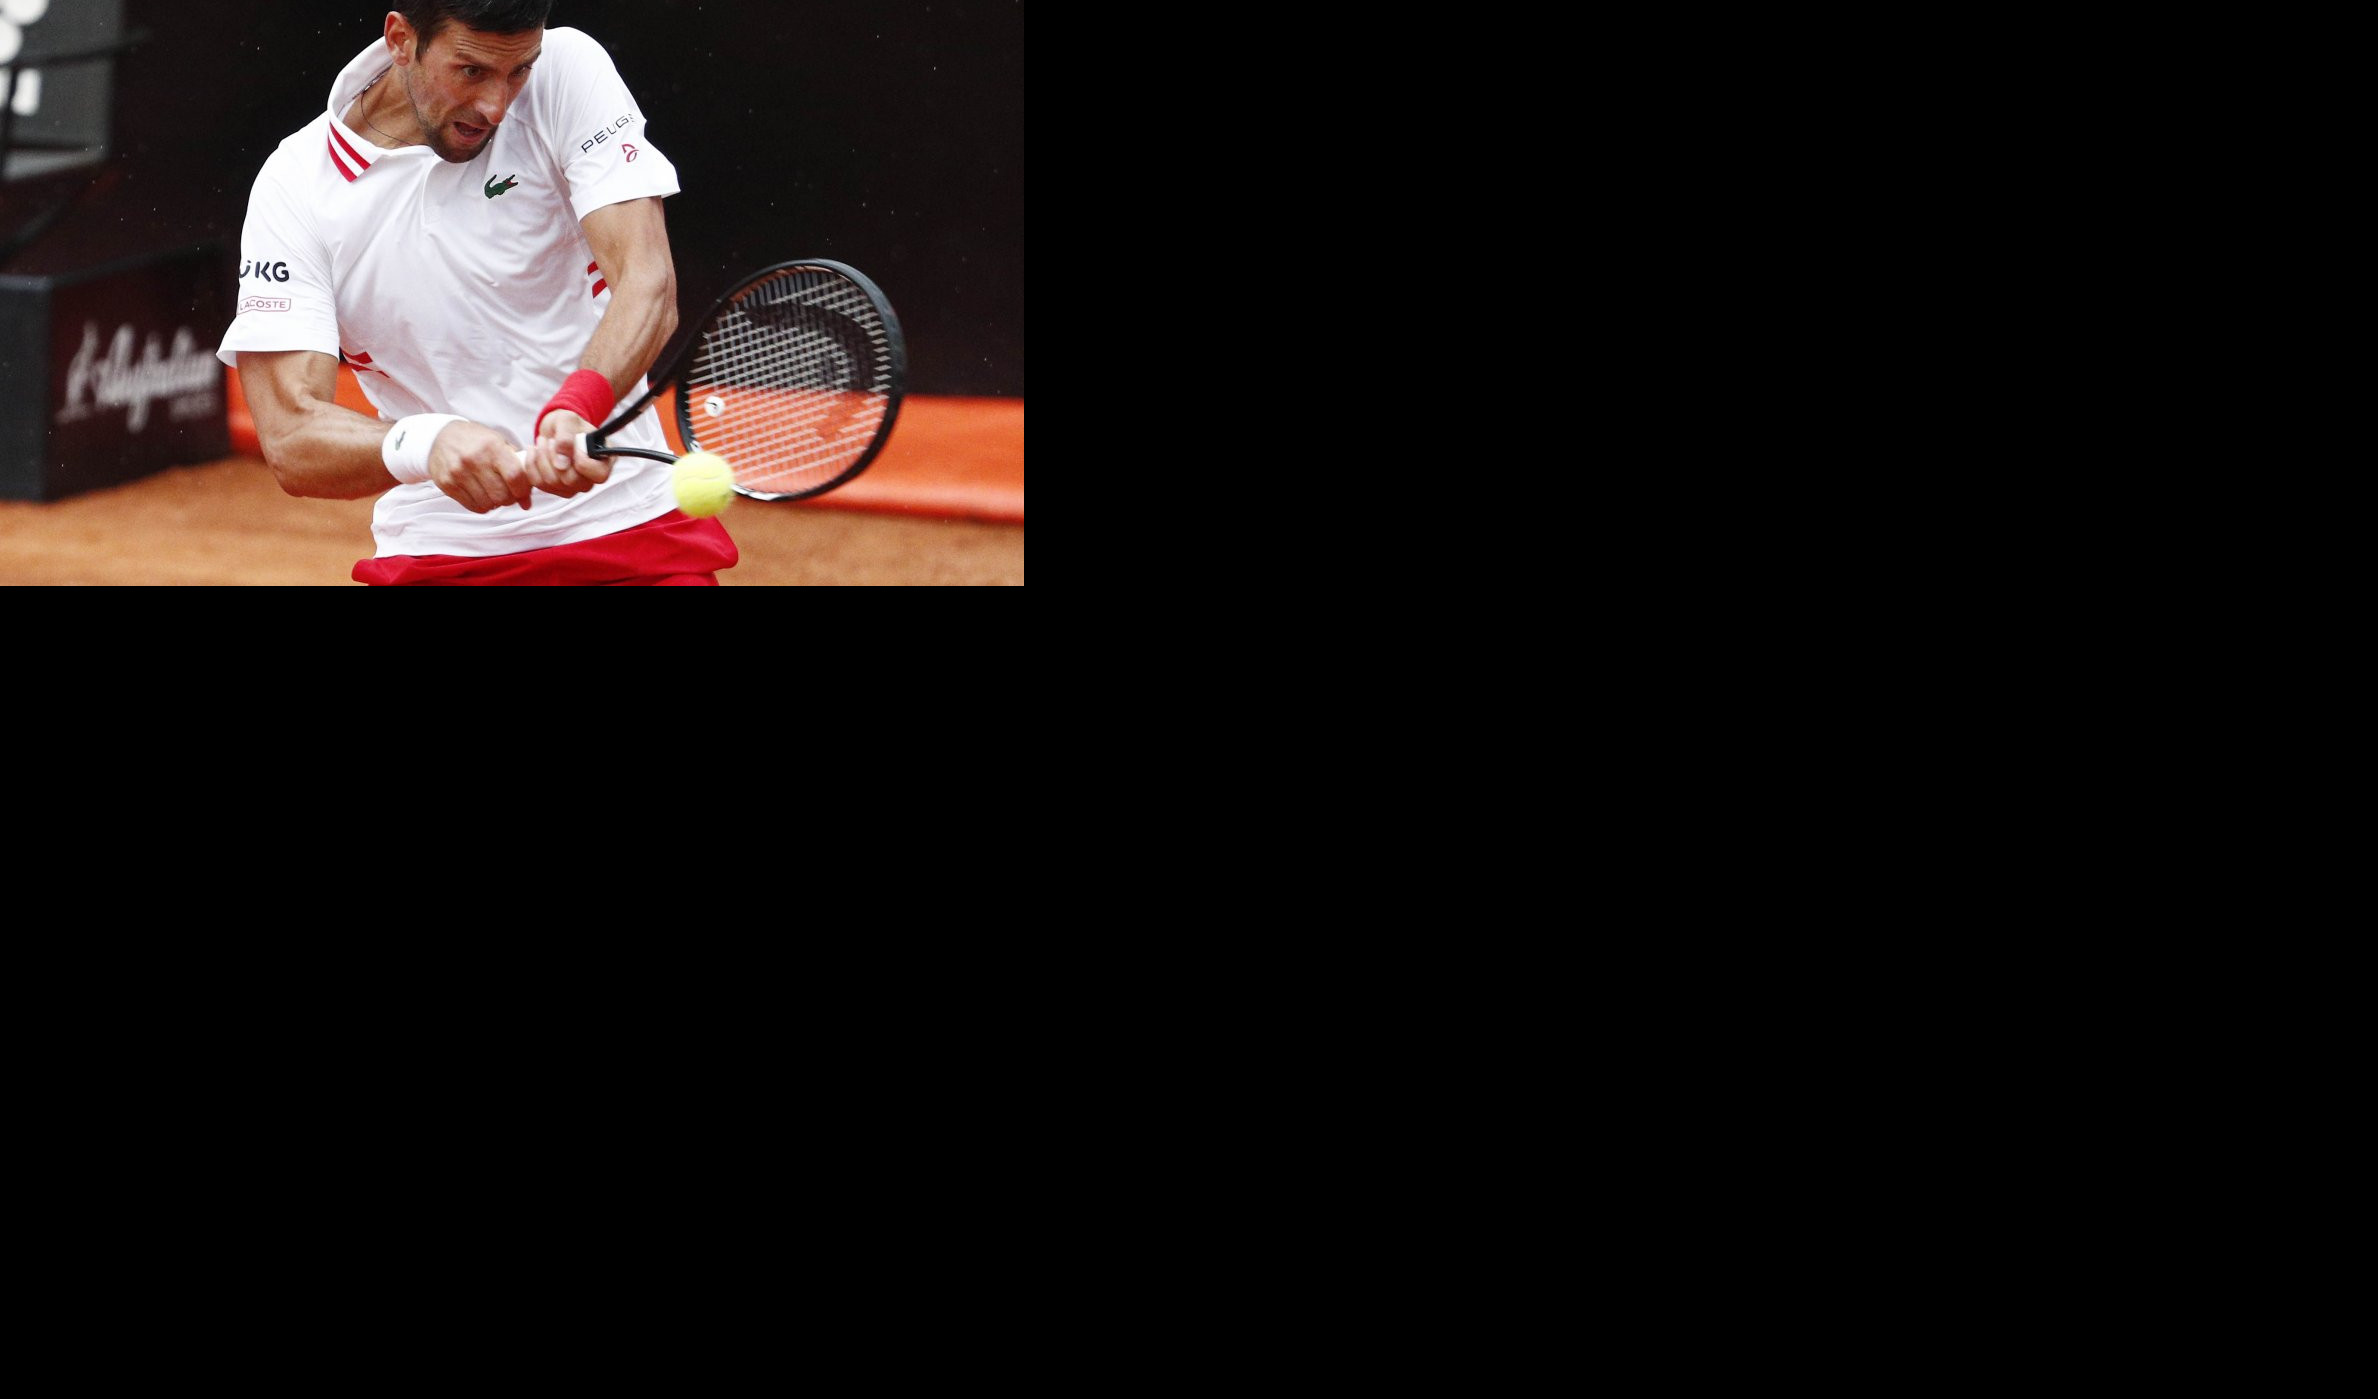 SNIMAK KOJI JE OBIŠAO PLANETU! Novakov navijač sa srpskom zastavom na tribinama u Rimu! /VIDEO/